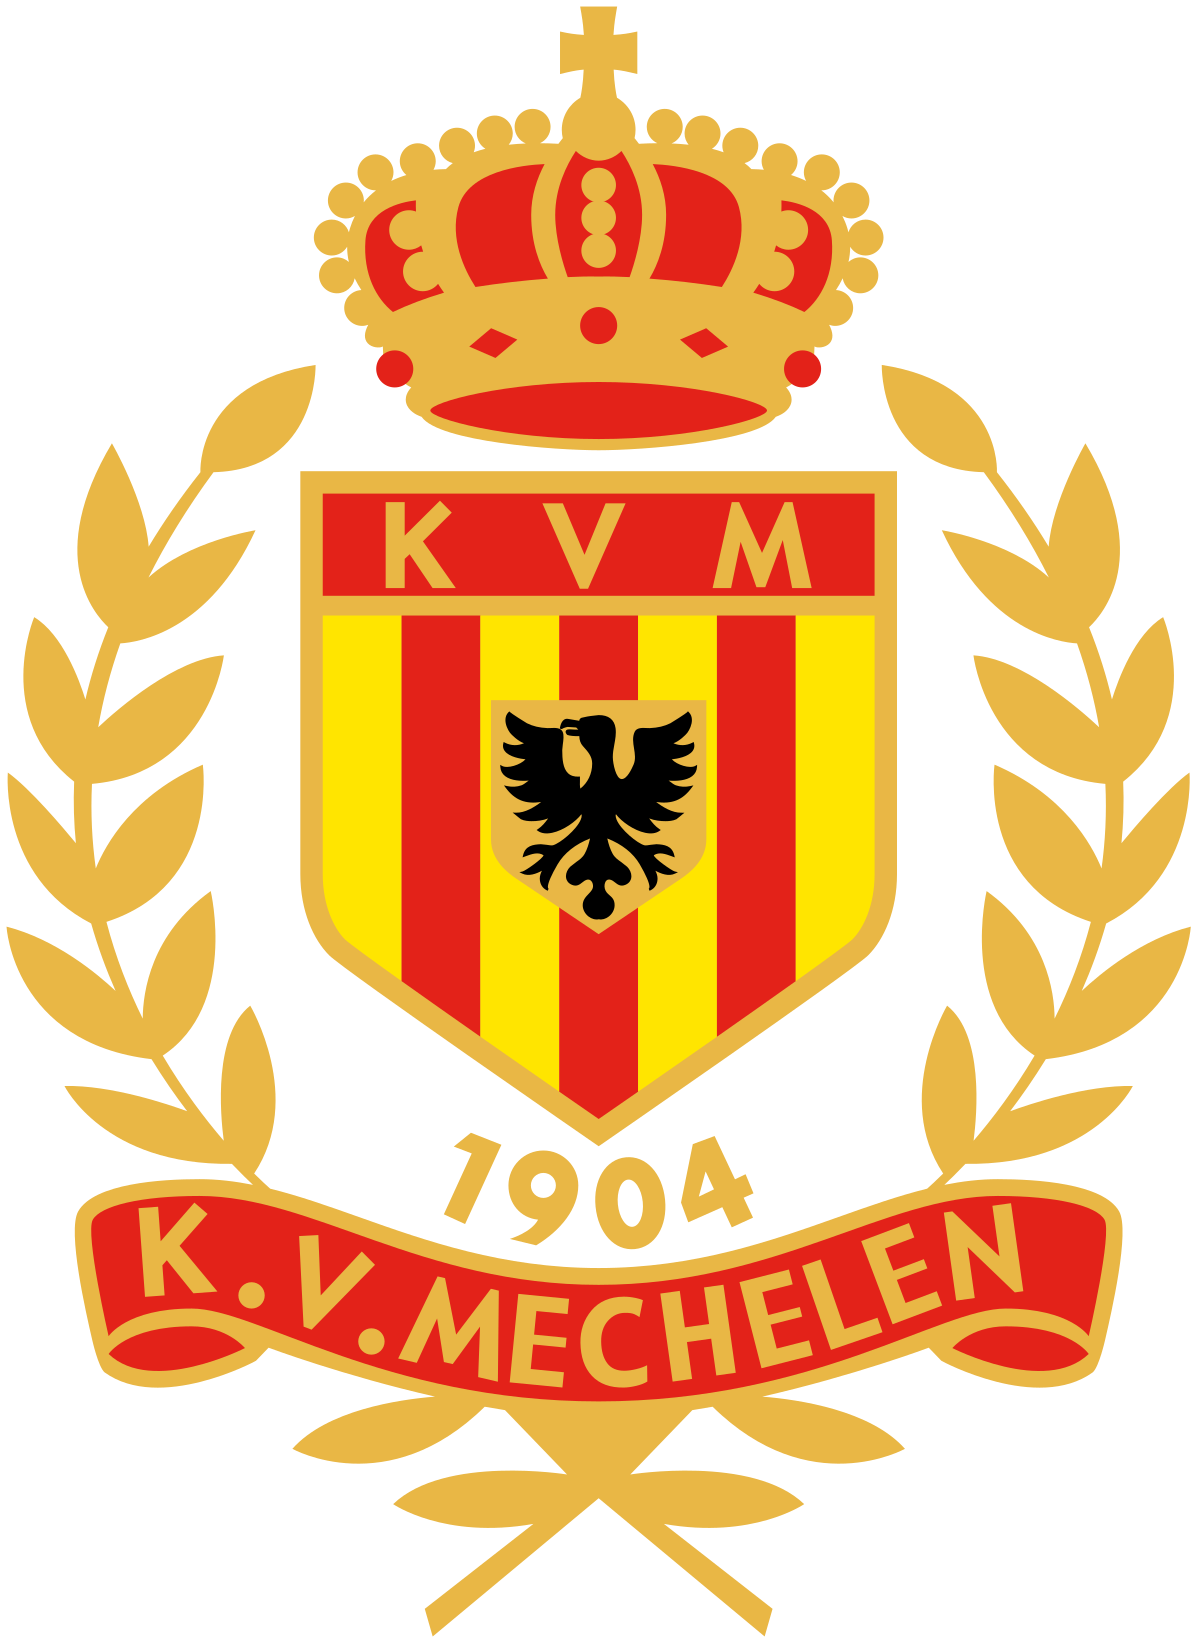 Mechelen W logo